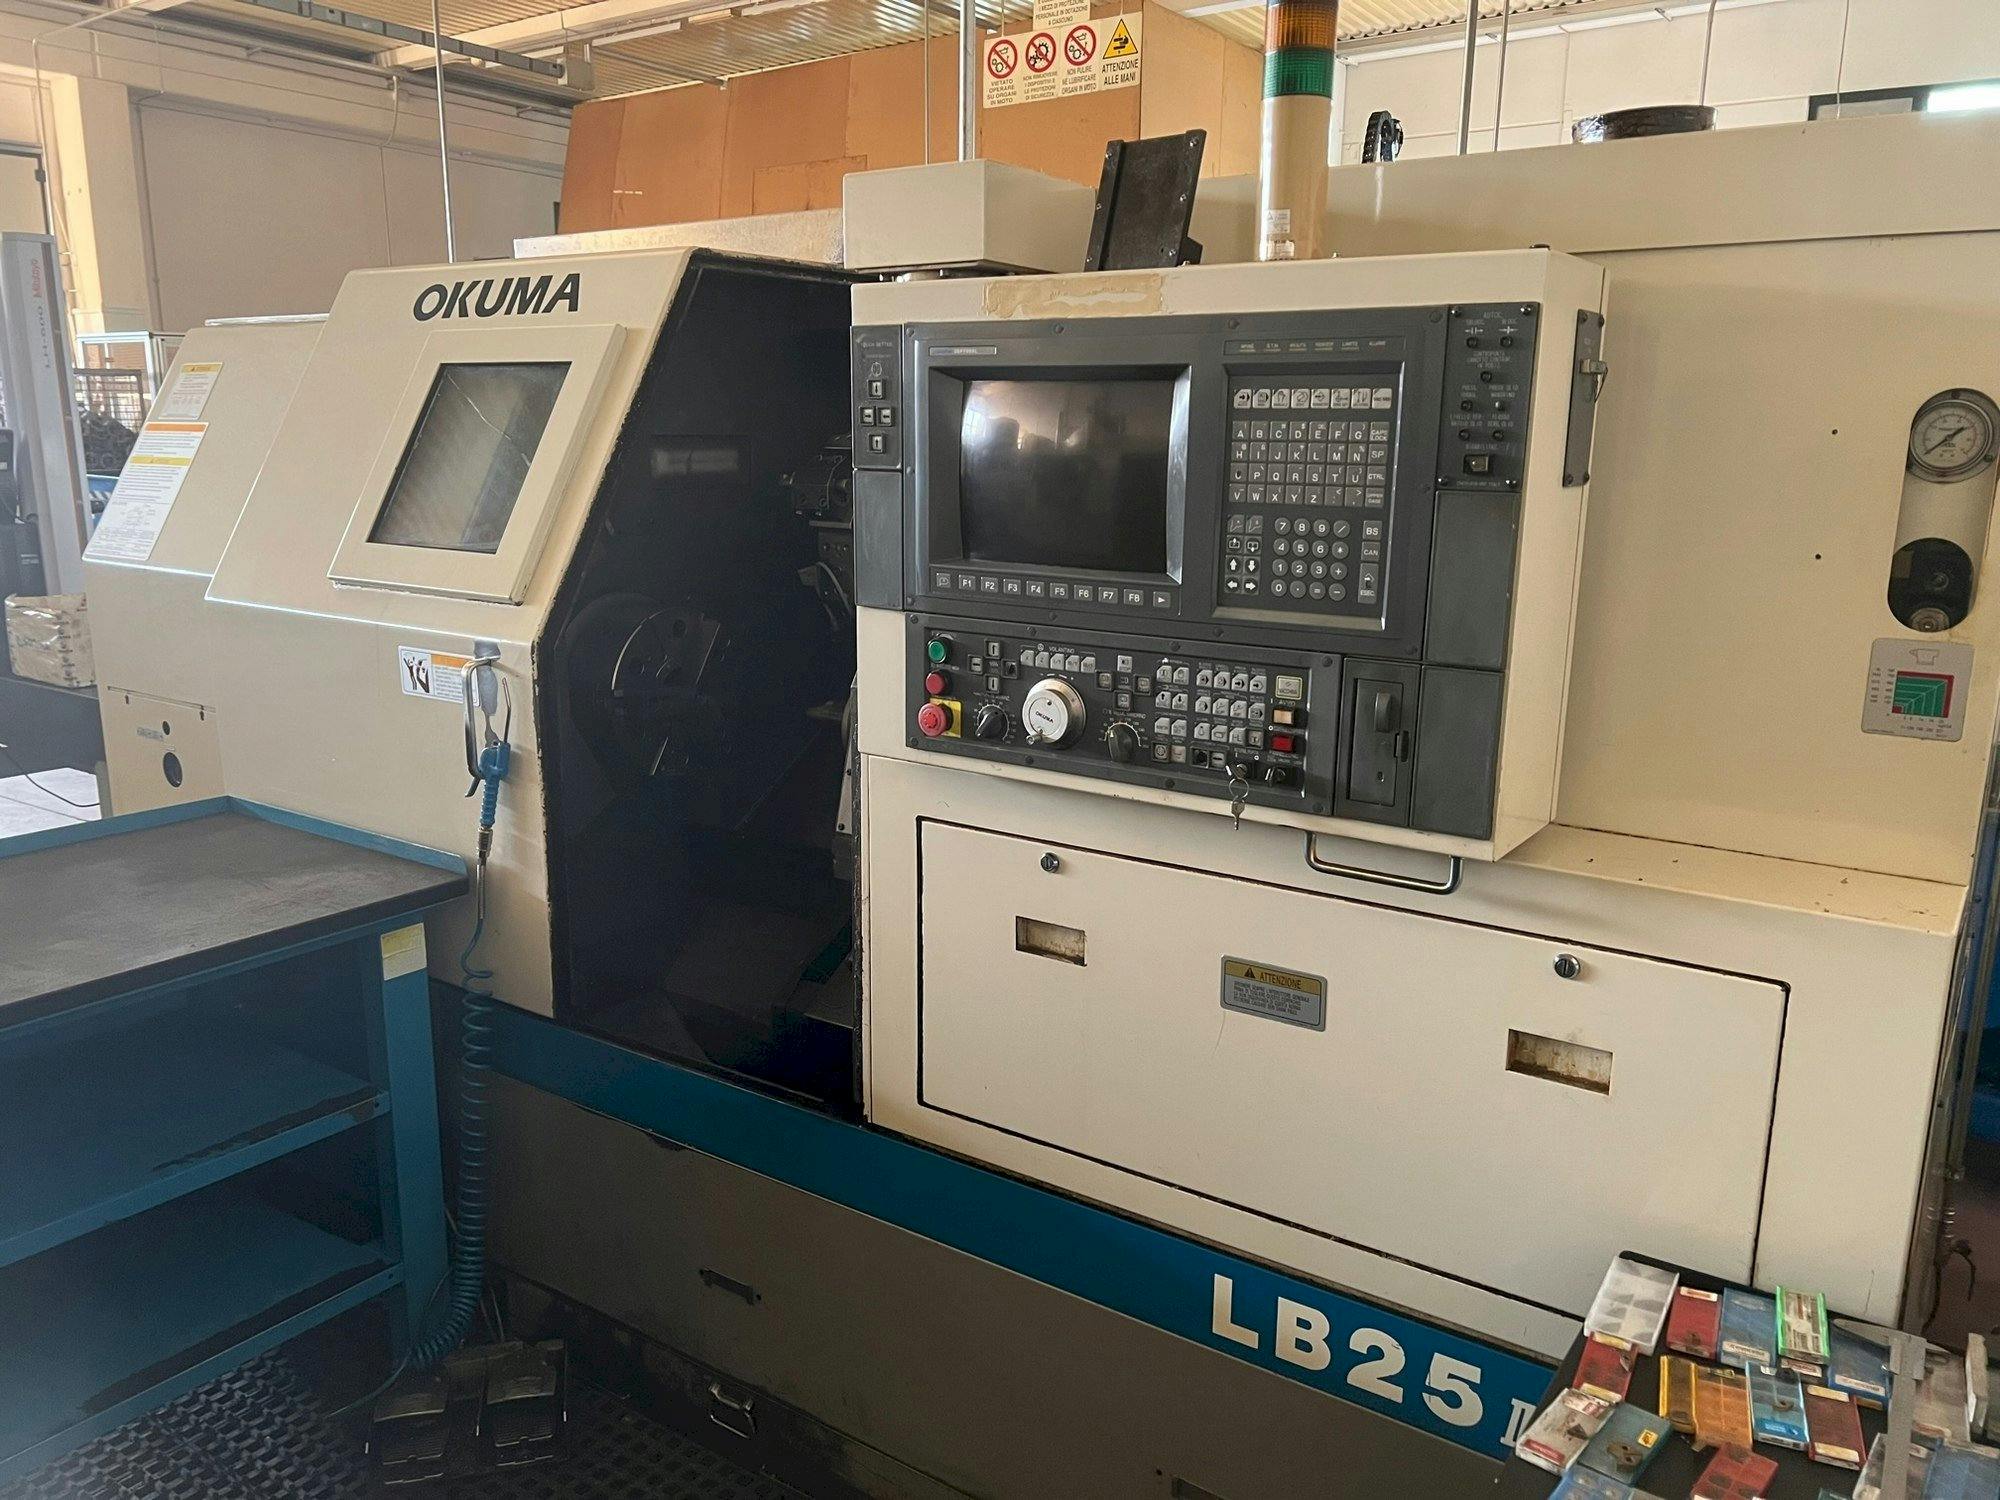 Vista frontal de la máquina Okuma LB 25 II